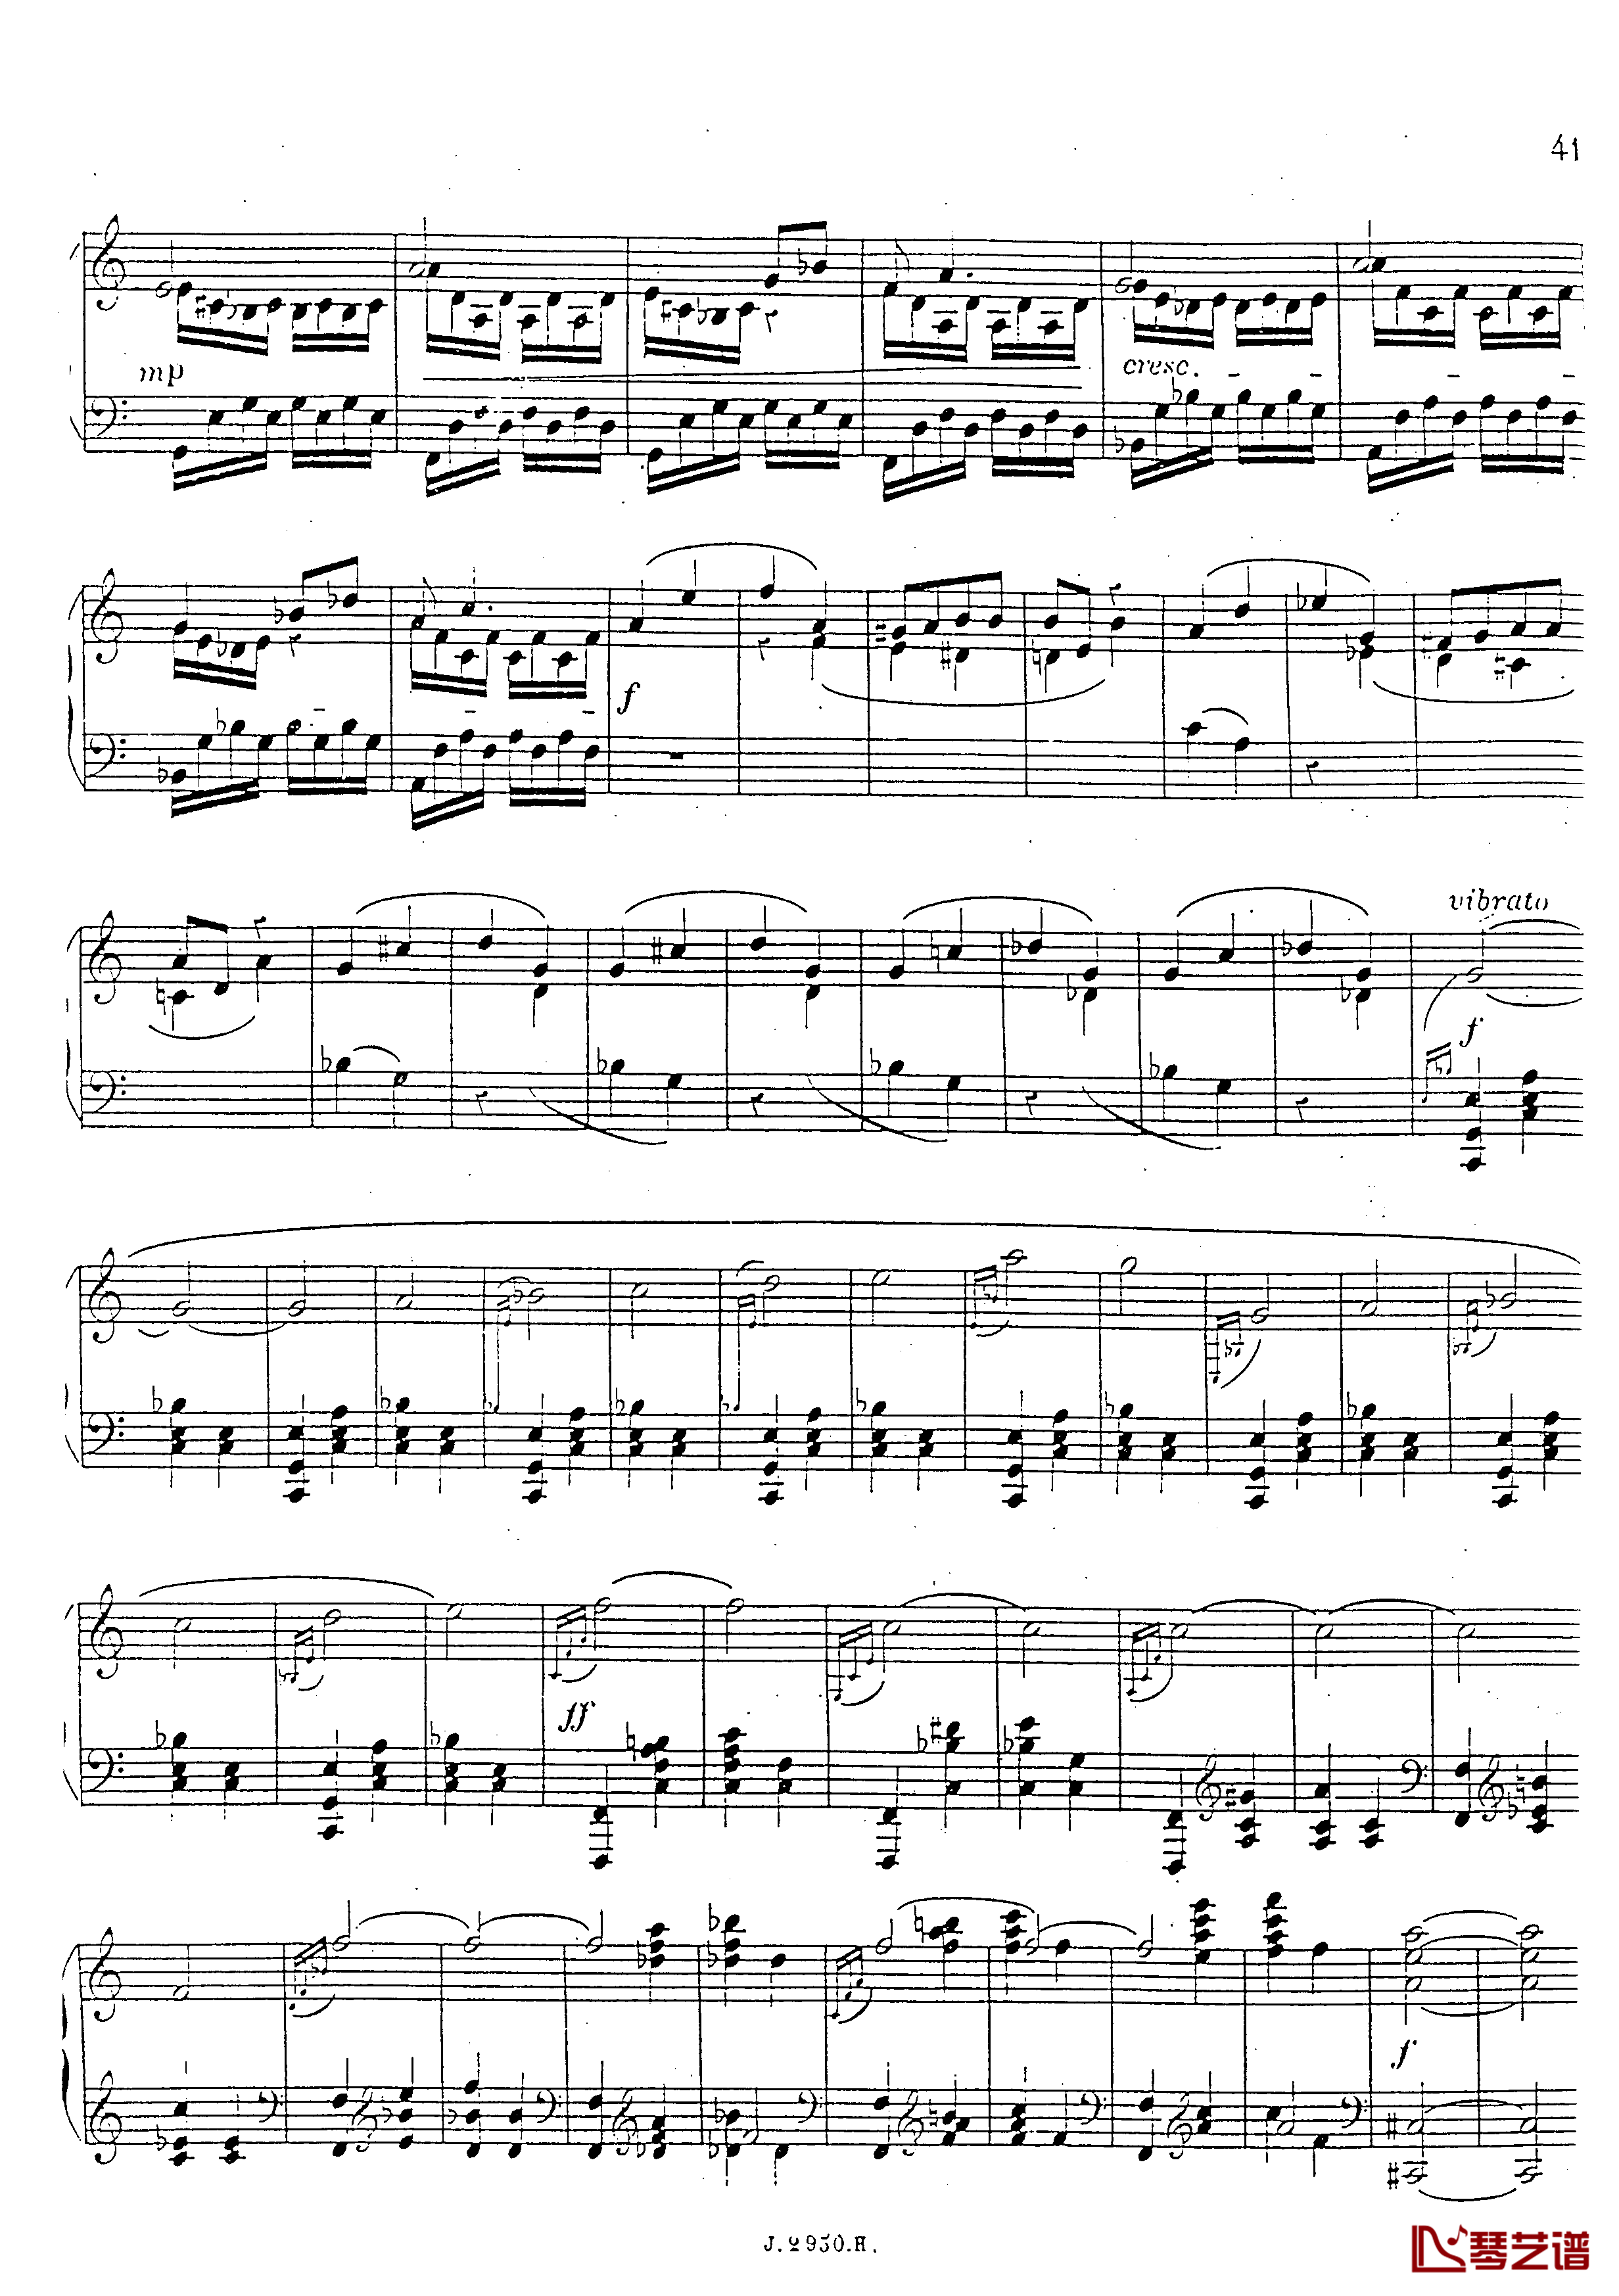 a小调第四钢琴奏鸣曲钢琴谱-安东 鲁宾斯坦- Op.10042